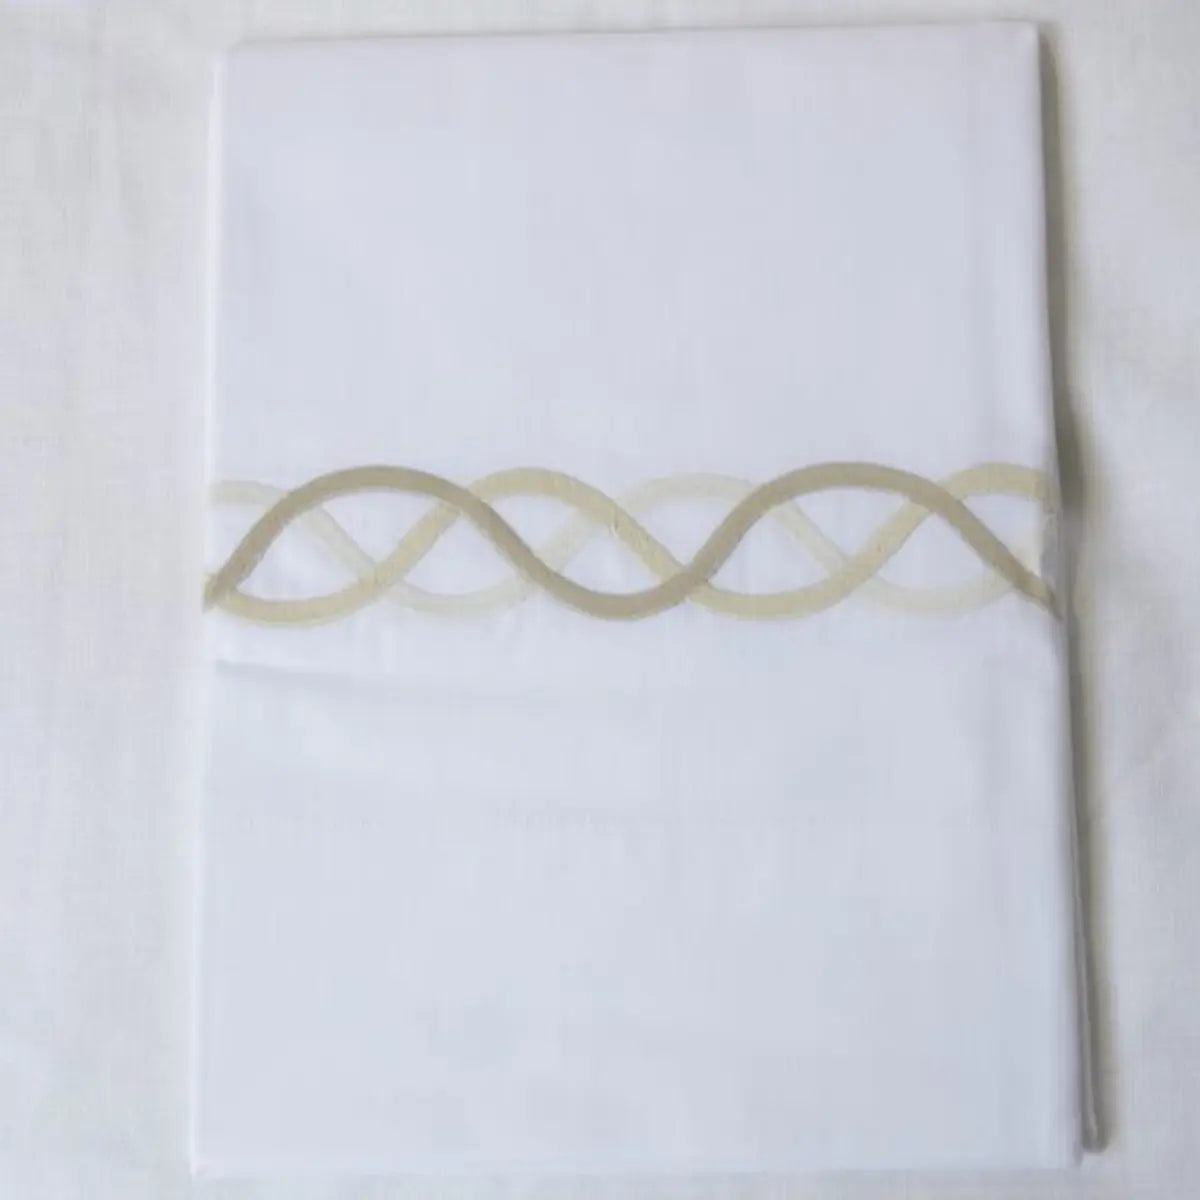 Gracious Home Triple Chain Link Pillowcase, Flat Sheet Natural